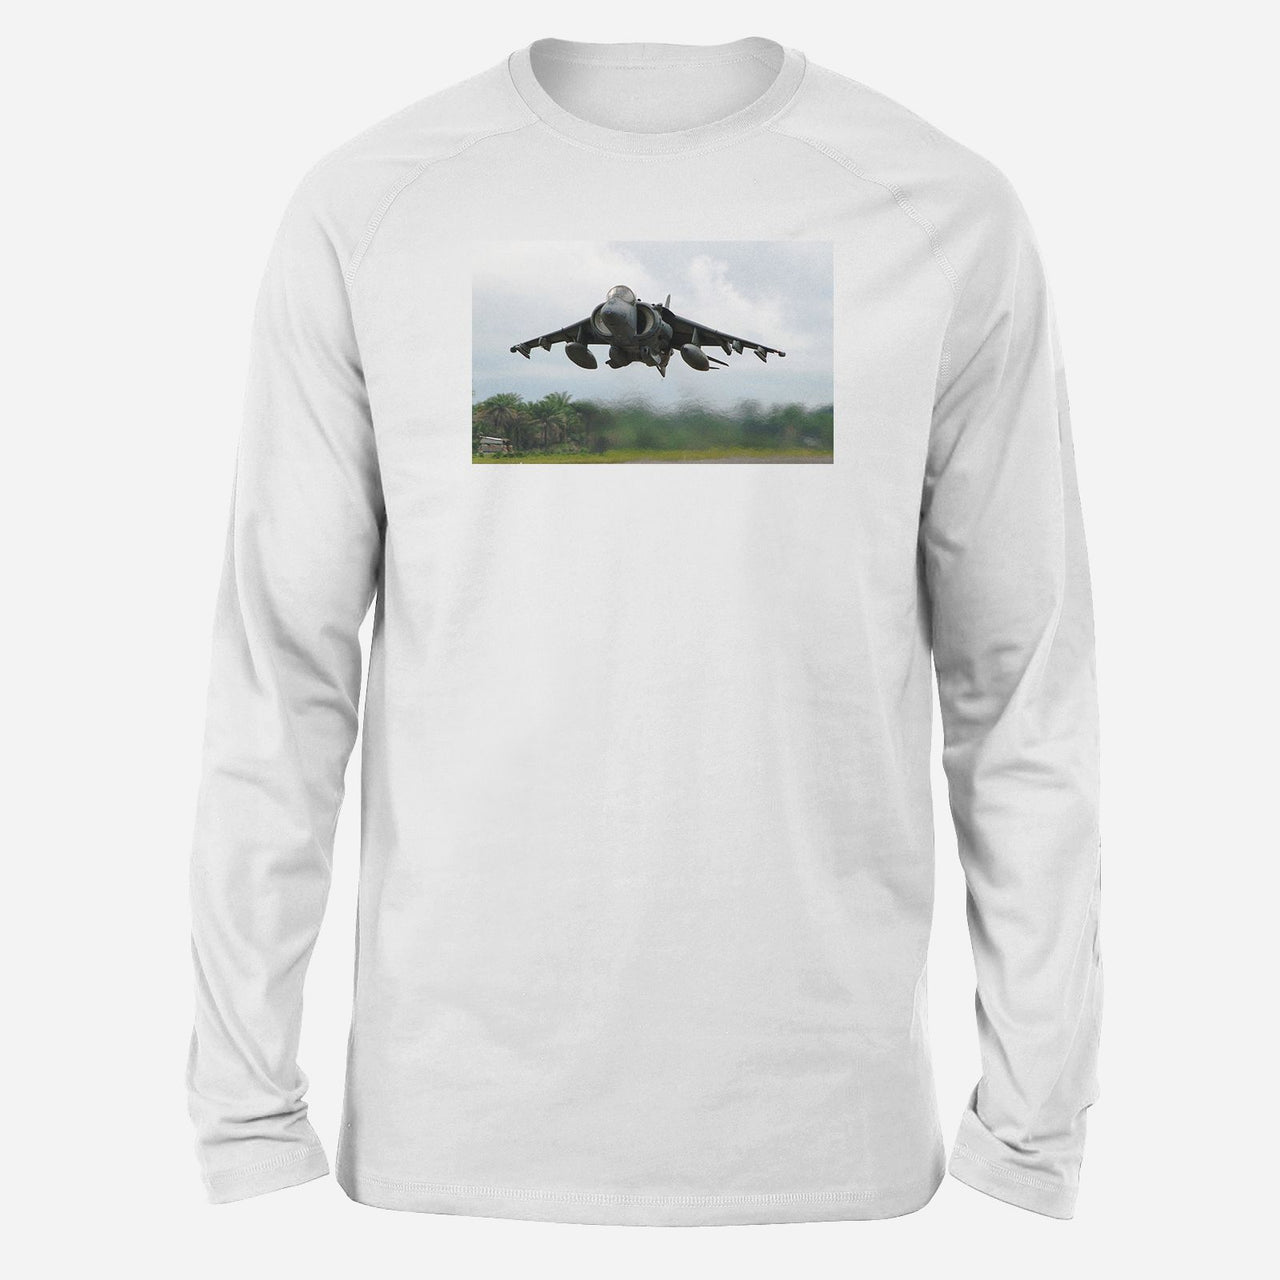 Departing Super Fighter Jet Designed Long-Sleeve T-Shirts